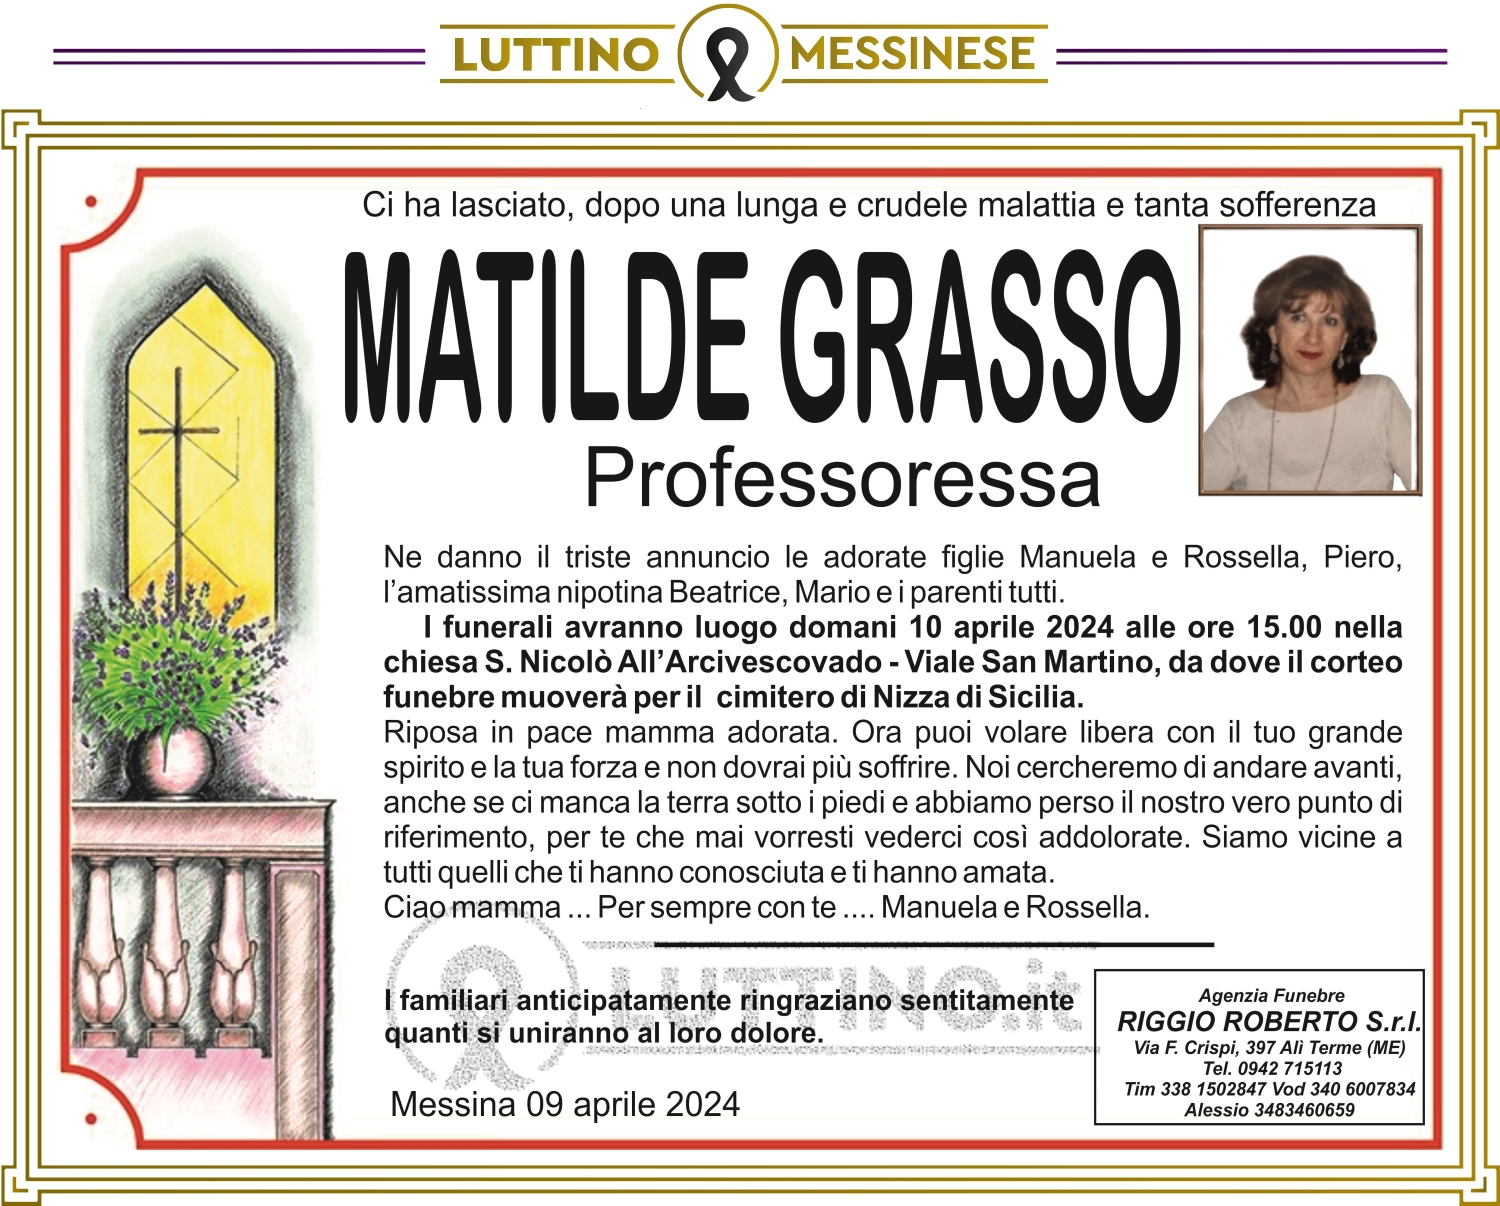 Matilde Grasso